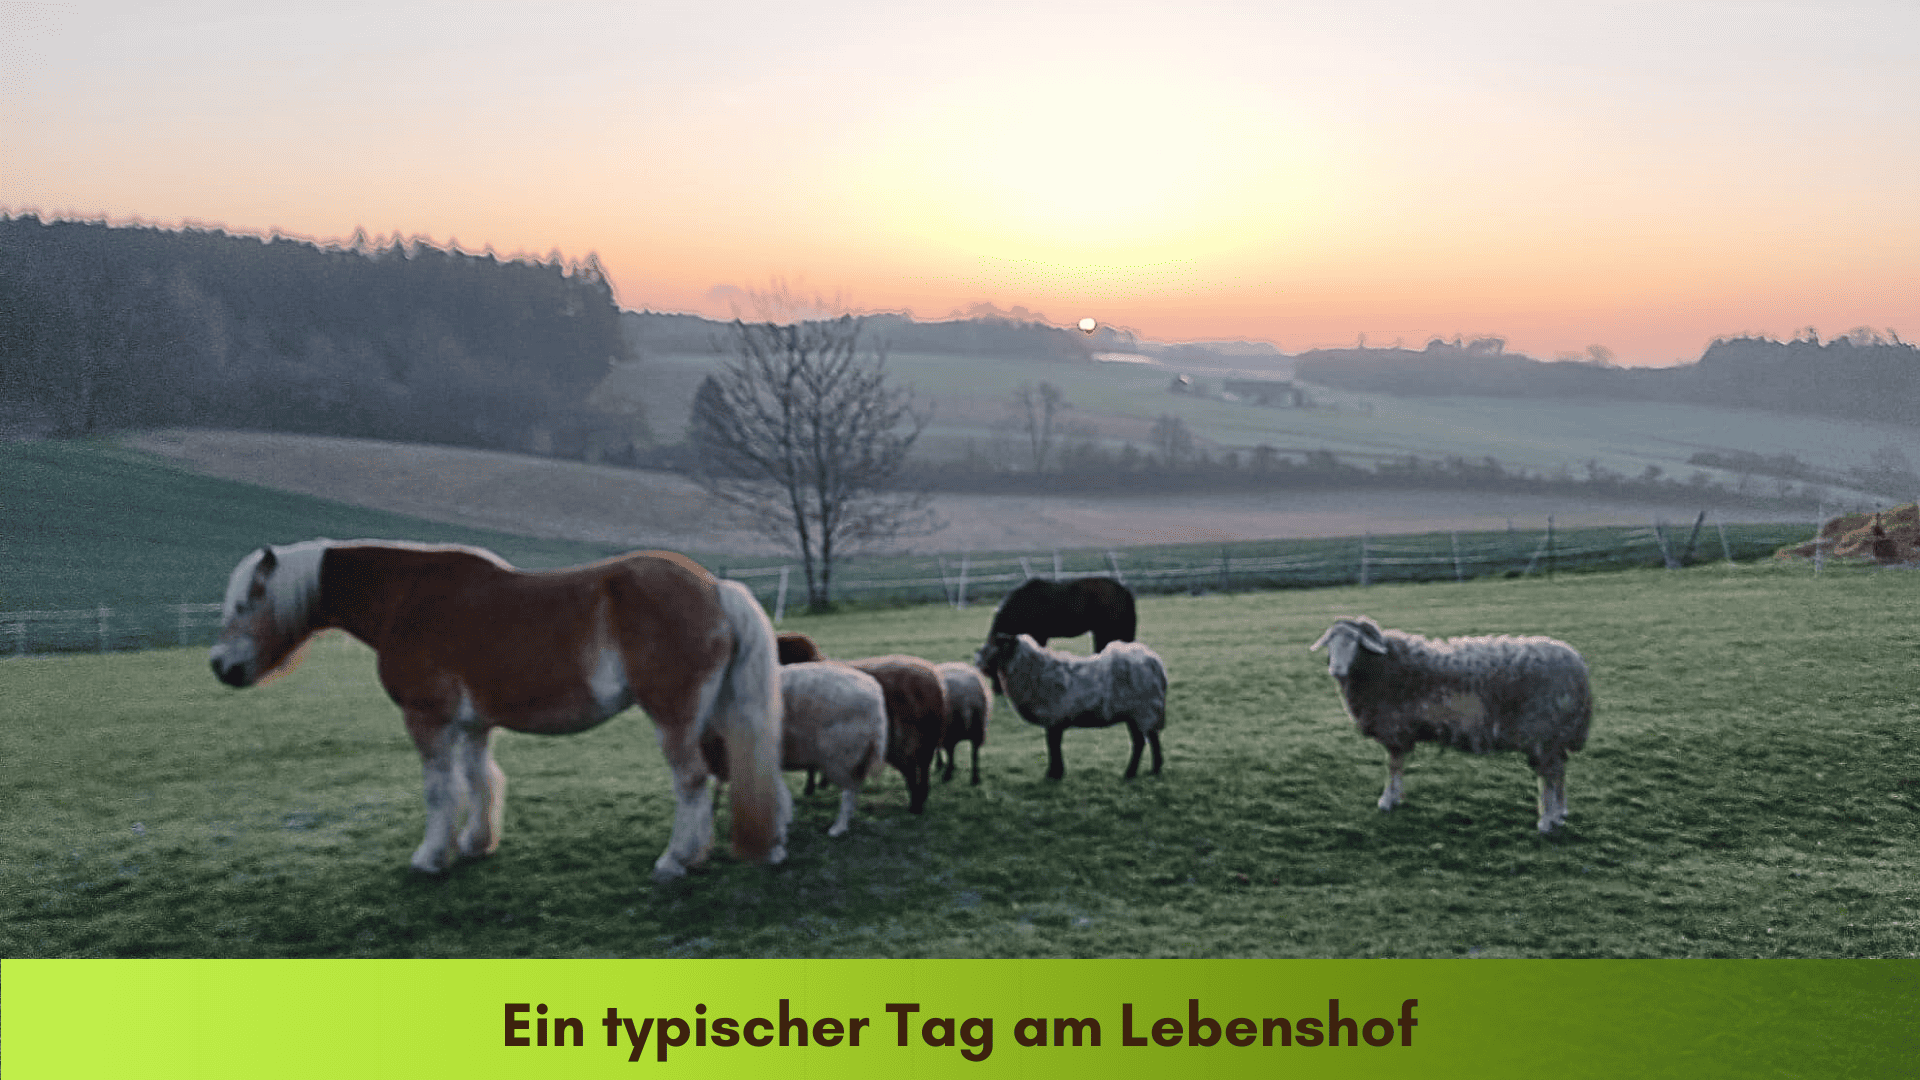 Die Pferde und Schafe stehen bei Sonnenaufgang gemeinsam auf der Weide